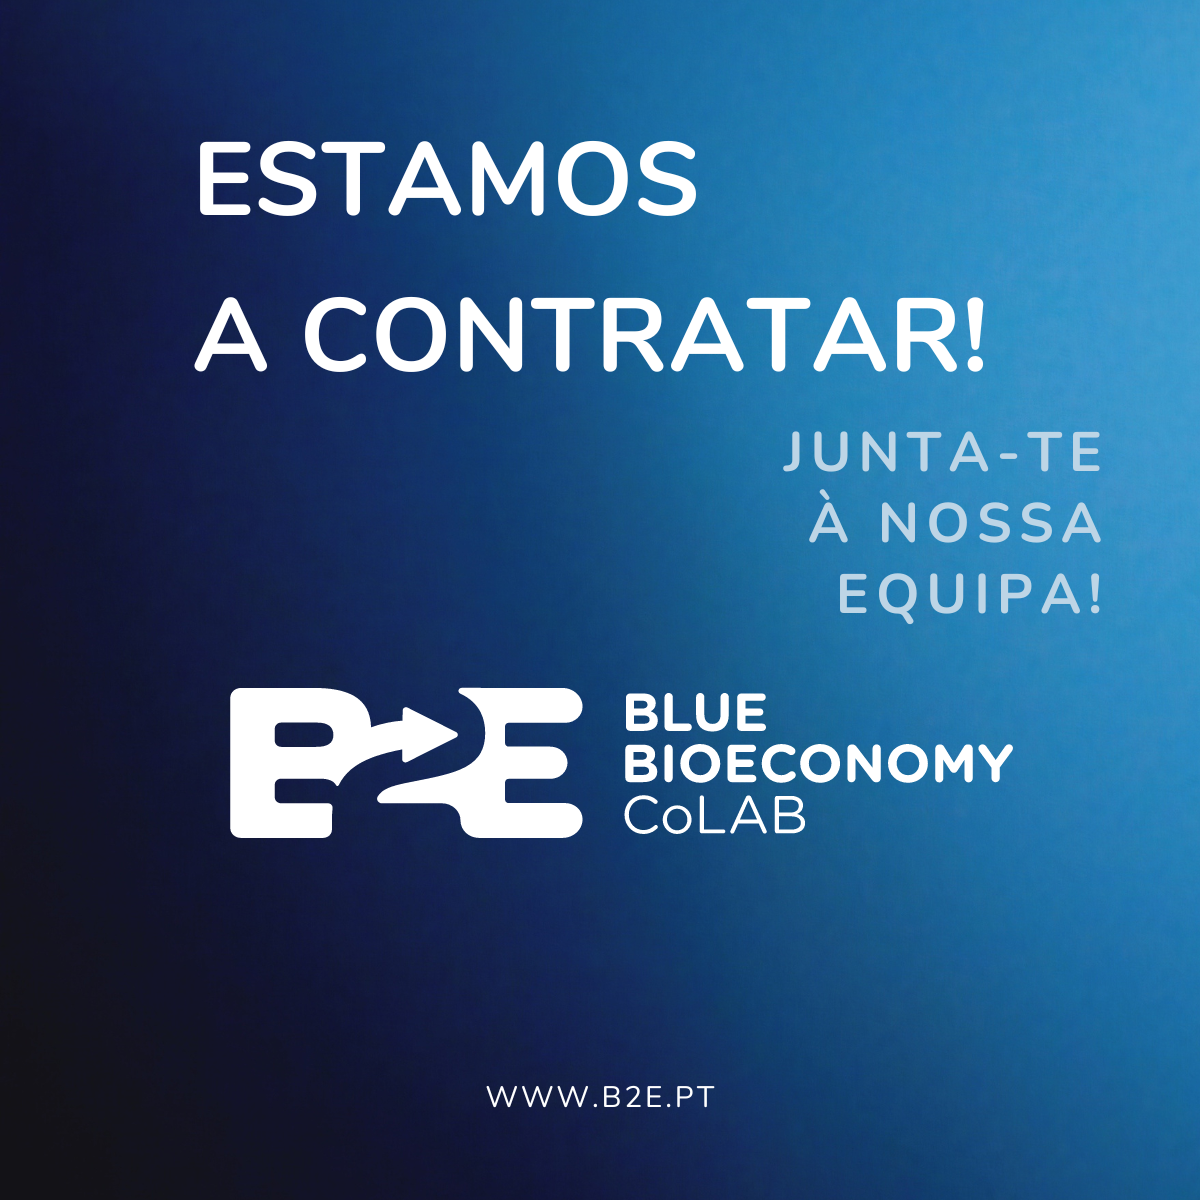 B2E - Blue BioEconomy CoLab